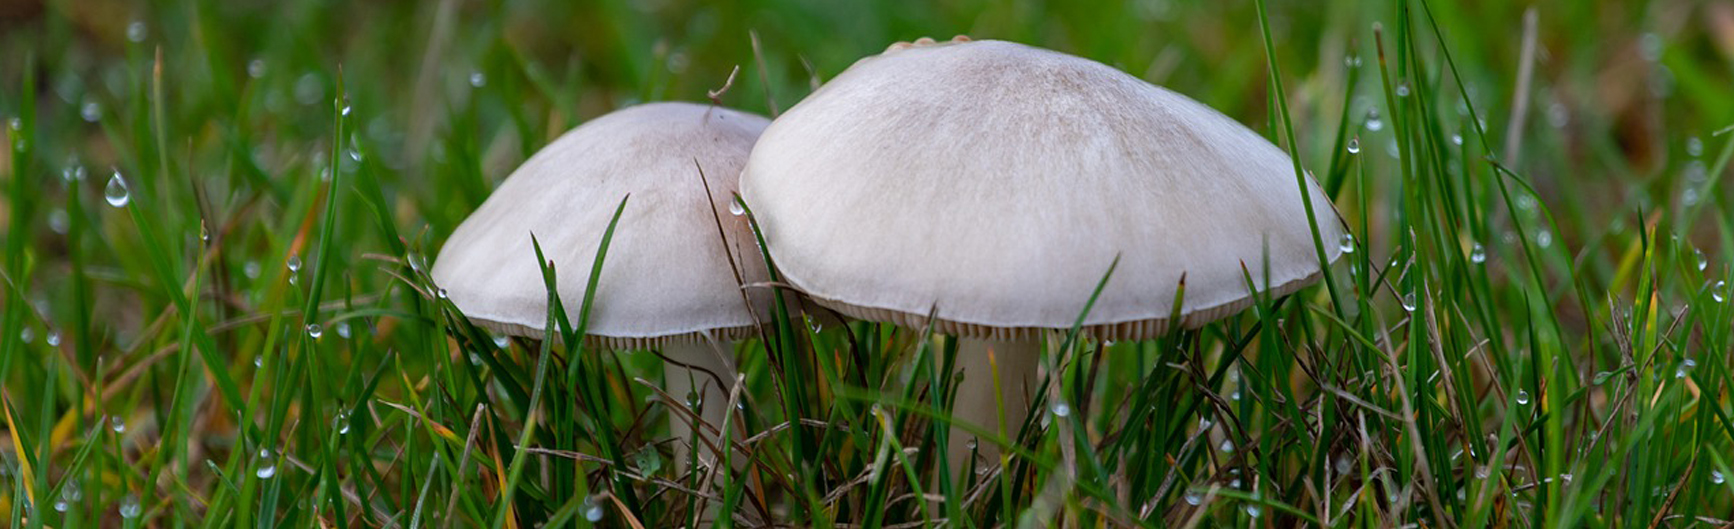 Preventing Mushroom Poisoning